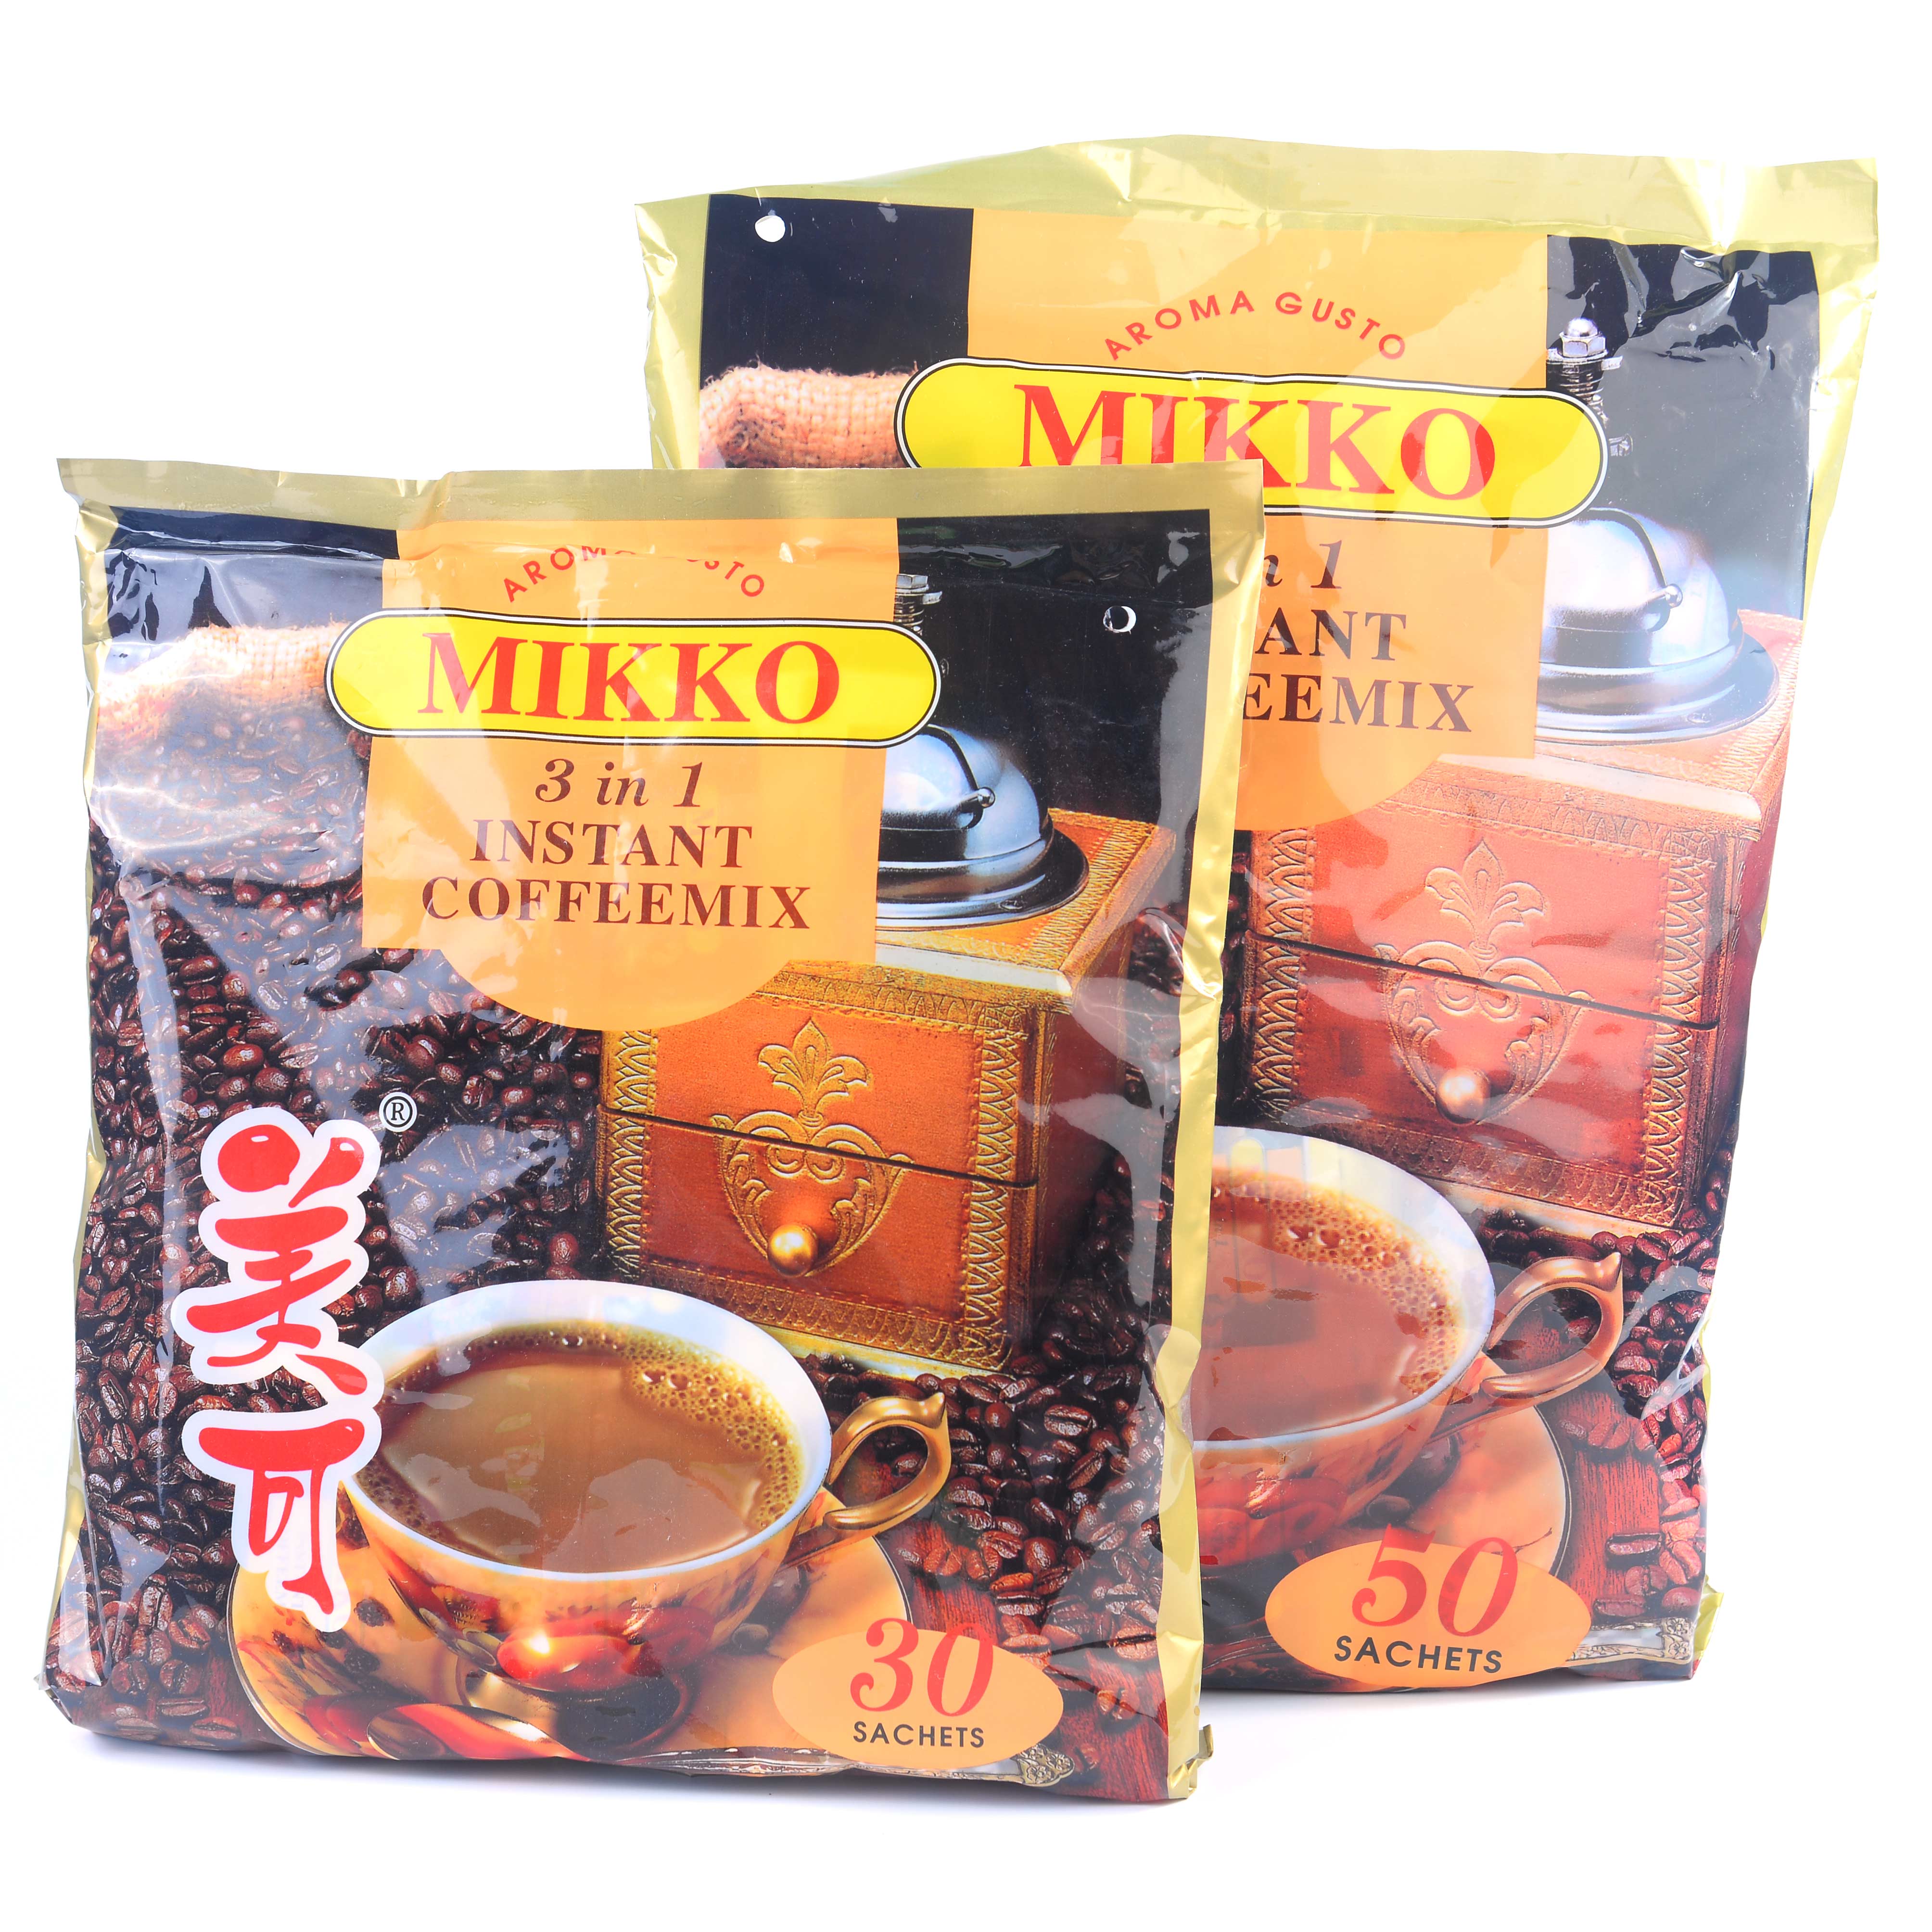 缅甸进口冲调饮品美可咖啡mikko三合一速溶大美可咖啡粉1000g/袋 - 图2